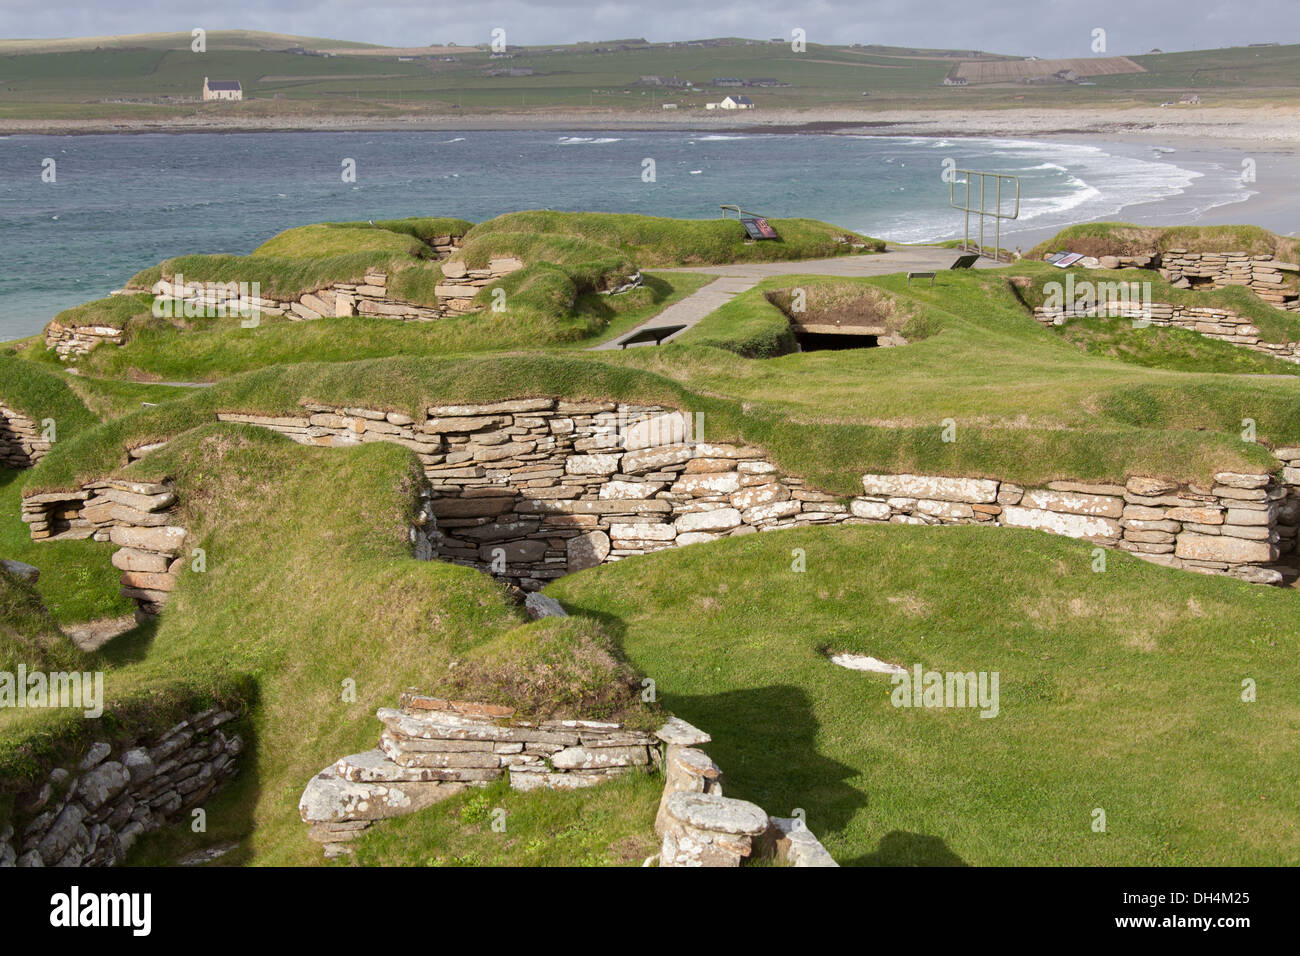 Des îles Orcades, en Écosse. Le site néolithique à Skara Brae, avec la baie de Skaill en arrière-plan. Banque D'Images